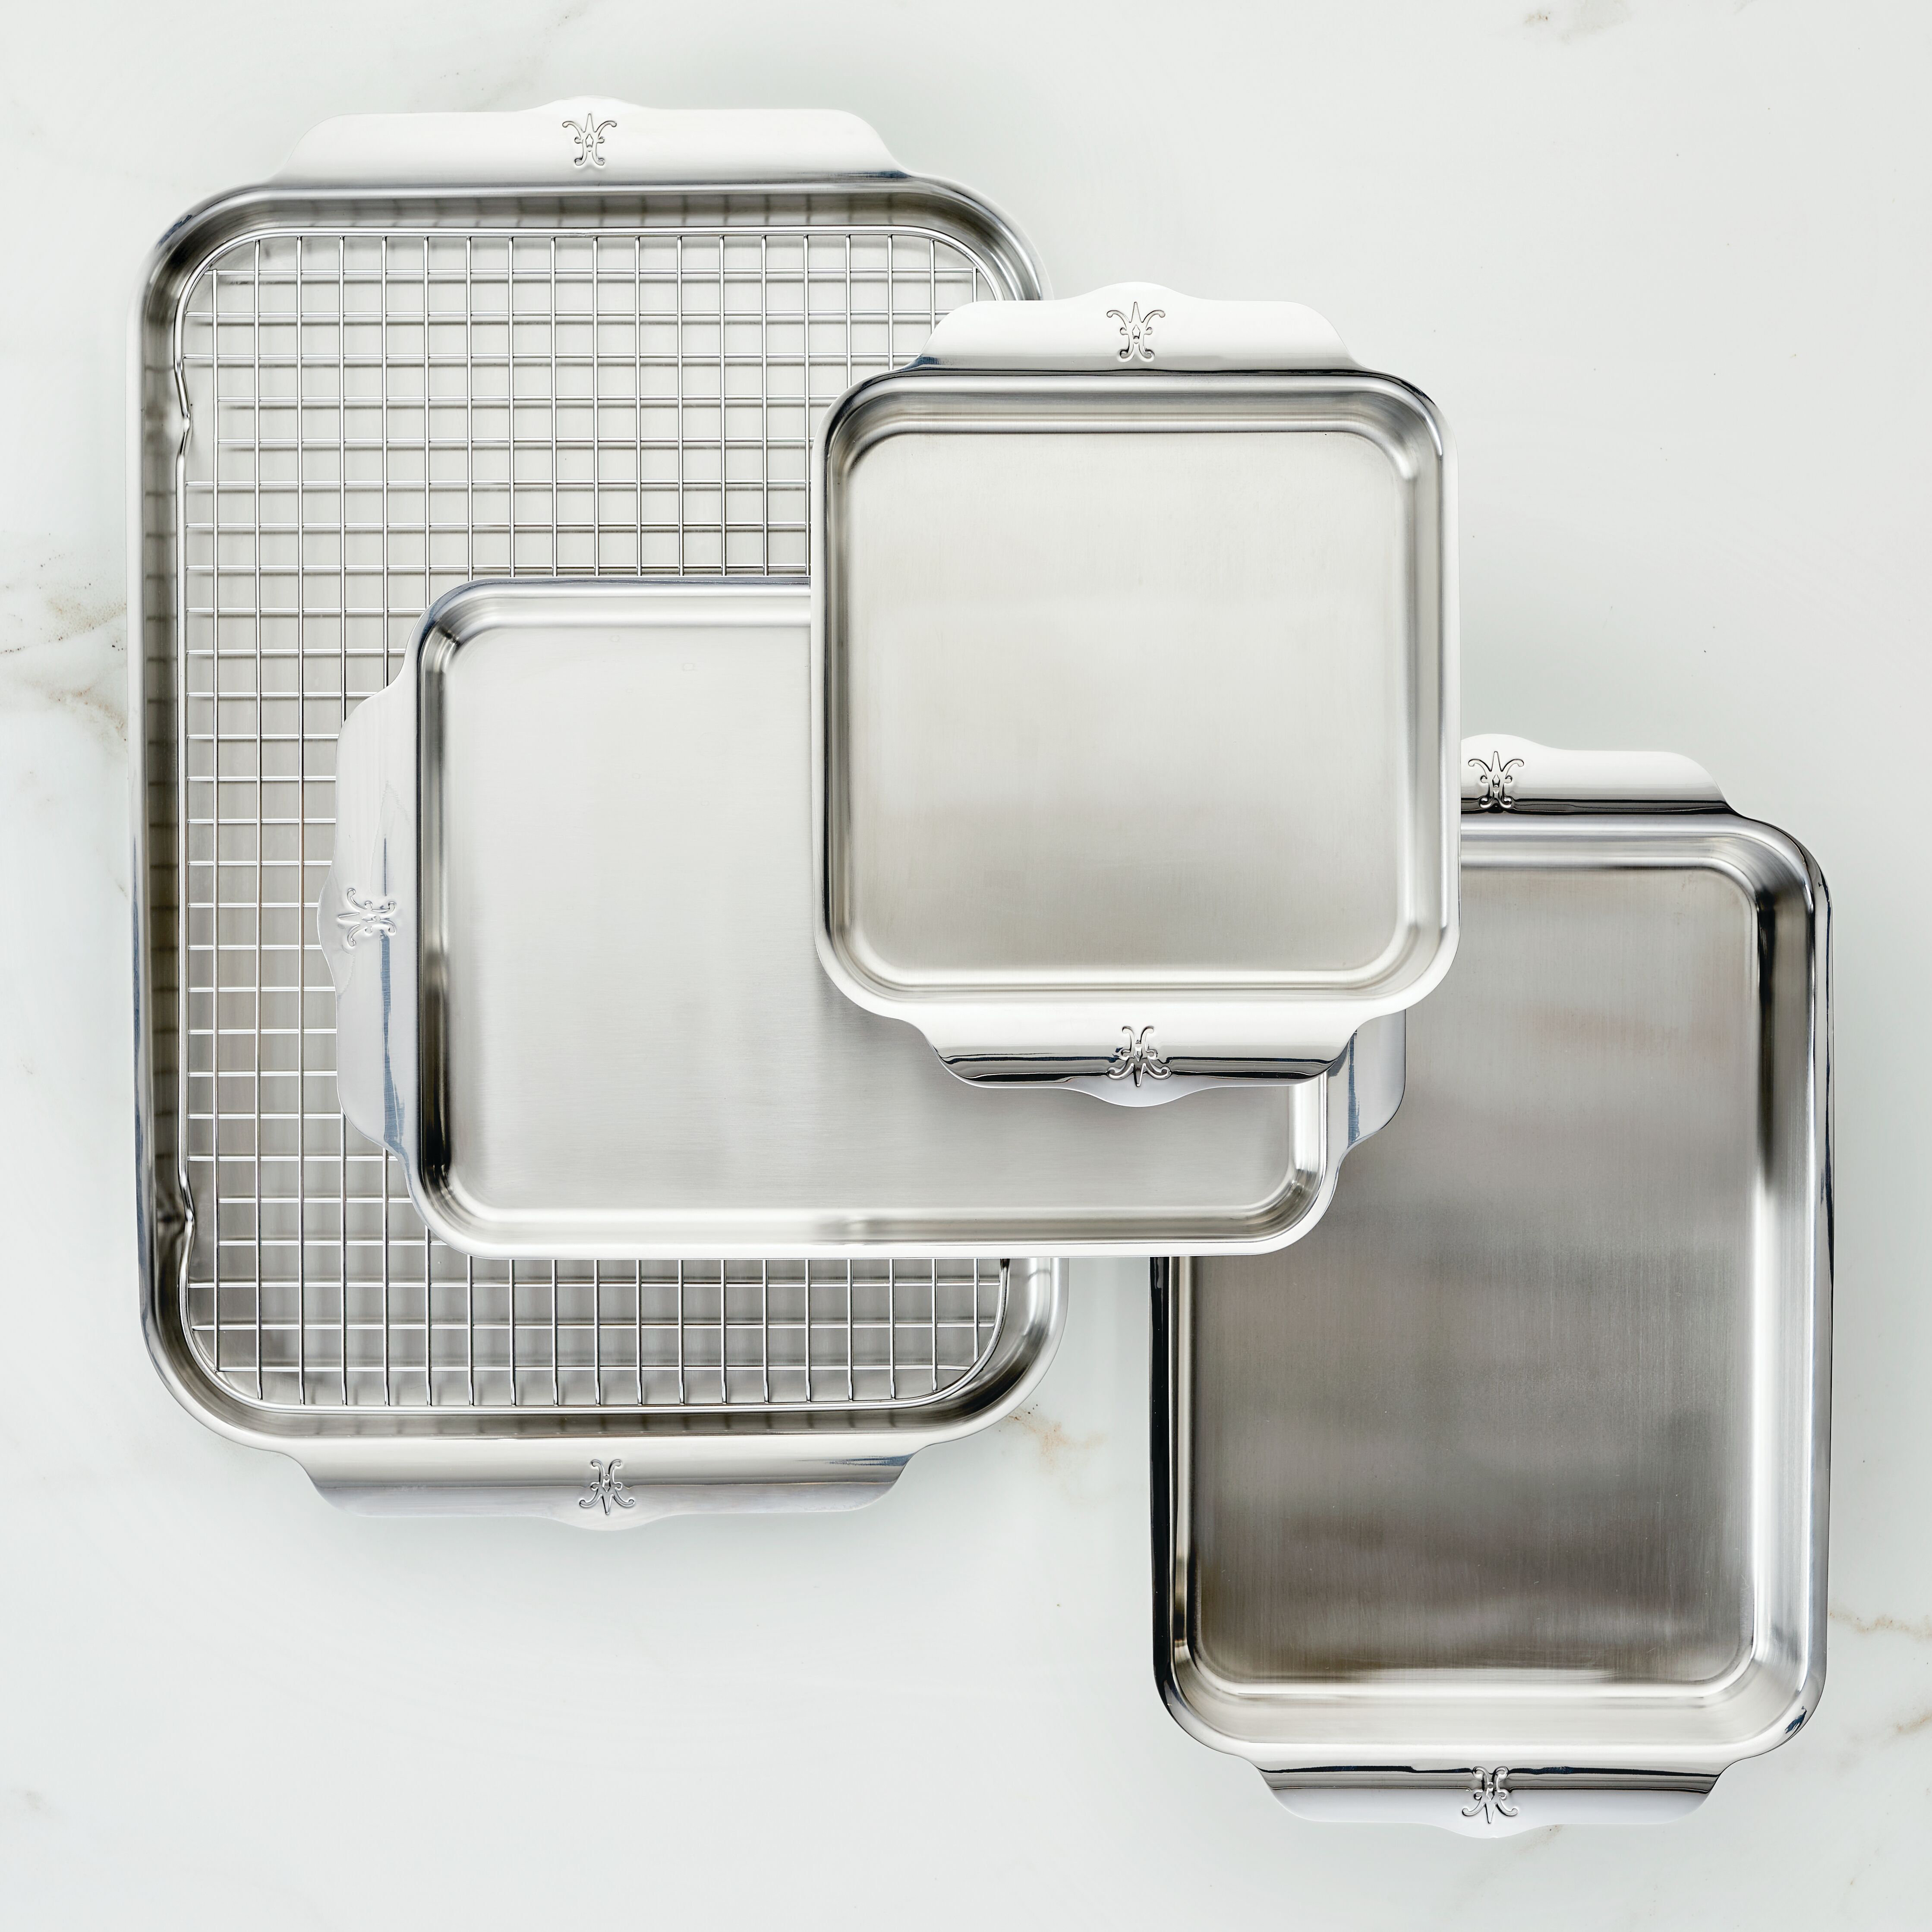 Nordic Ware Naturals 5-Piece Aluminum Sheet Pan Set